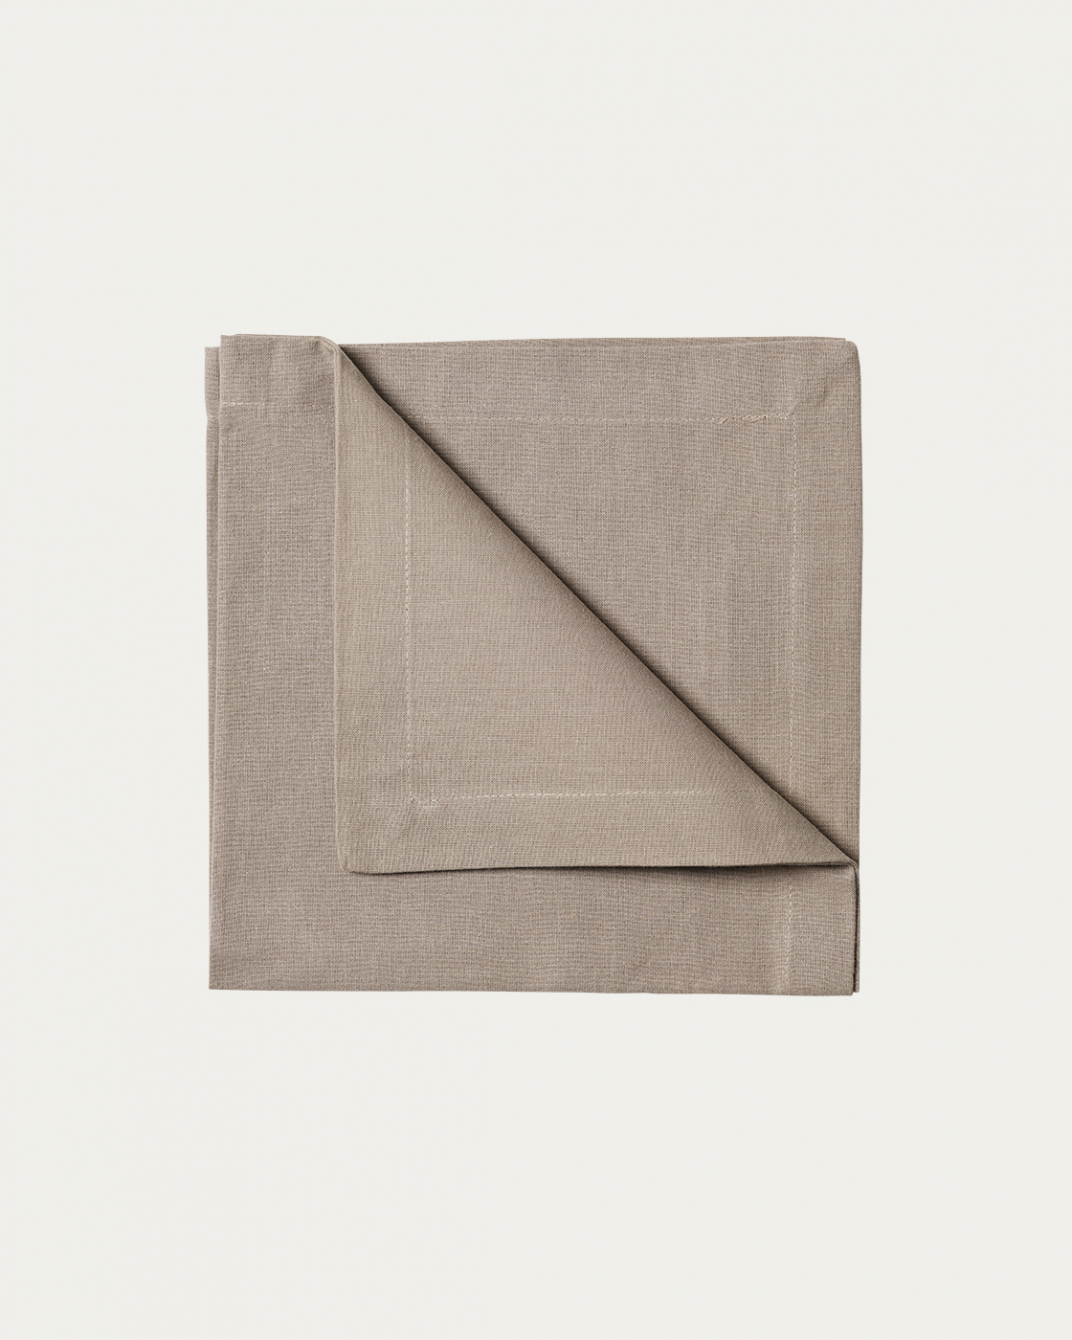 Produktbild maulwurfbraun ROBERT Serviette aus weicher Baumwolle von LINUM DESIGN. Größe 45x45 cm und in 4er-Pack verkauft.